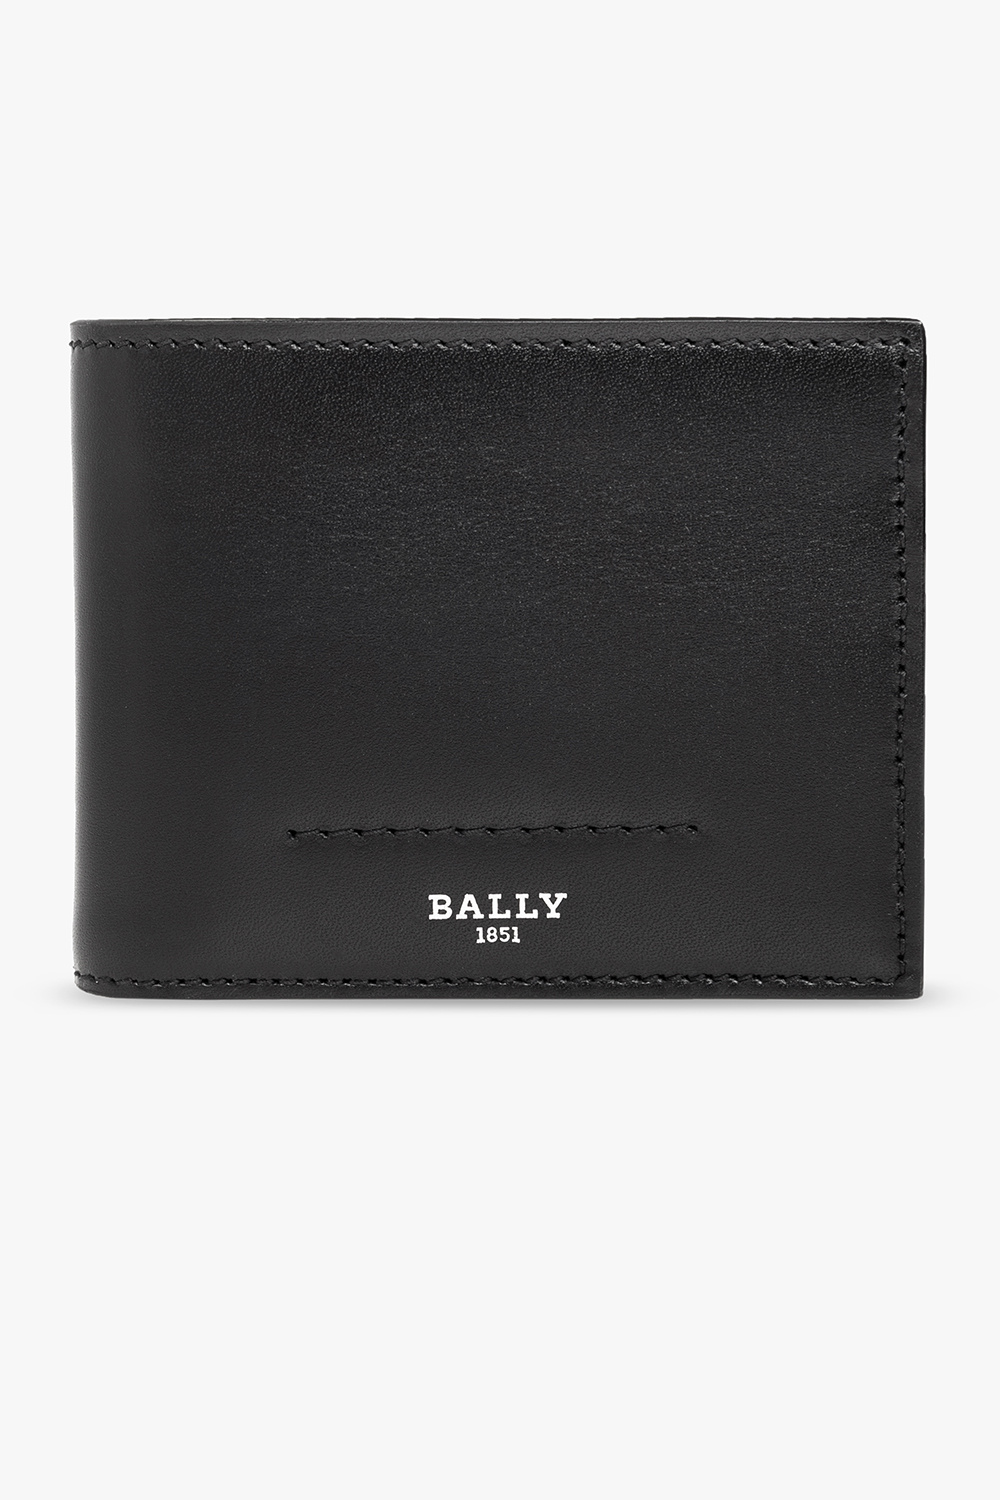 Leather wallet with logo Bally - Vitkac Australia